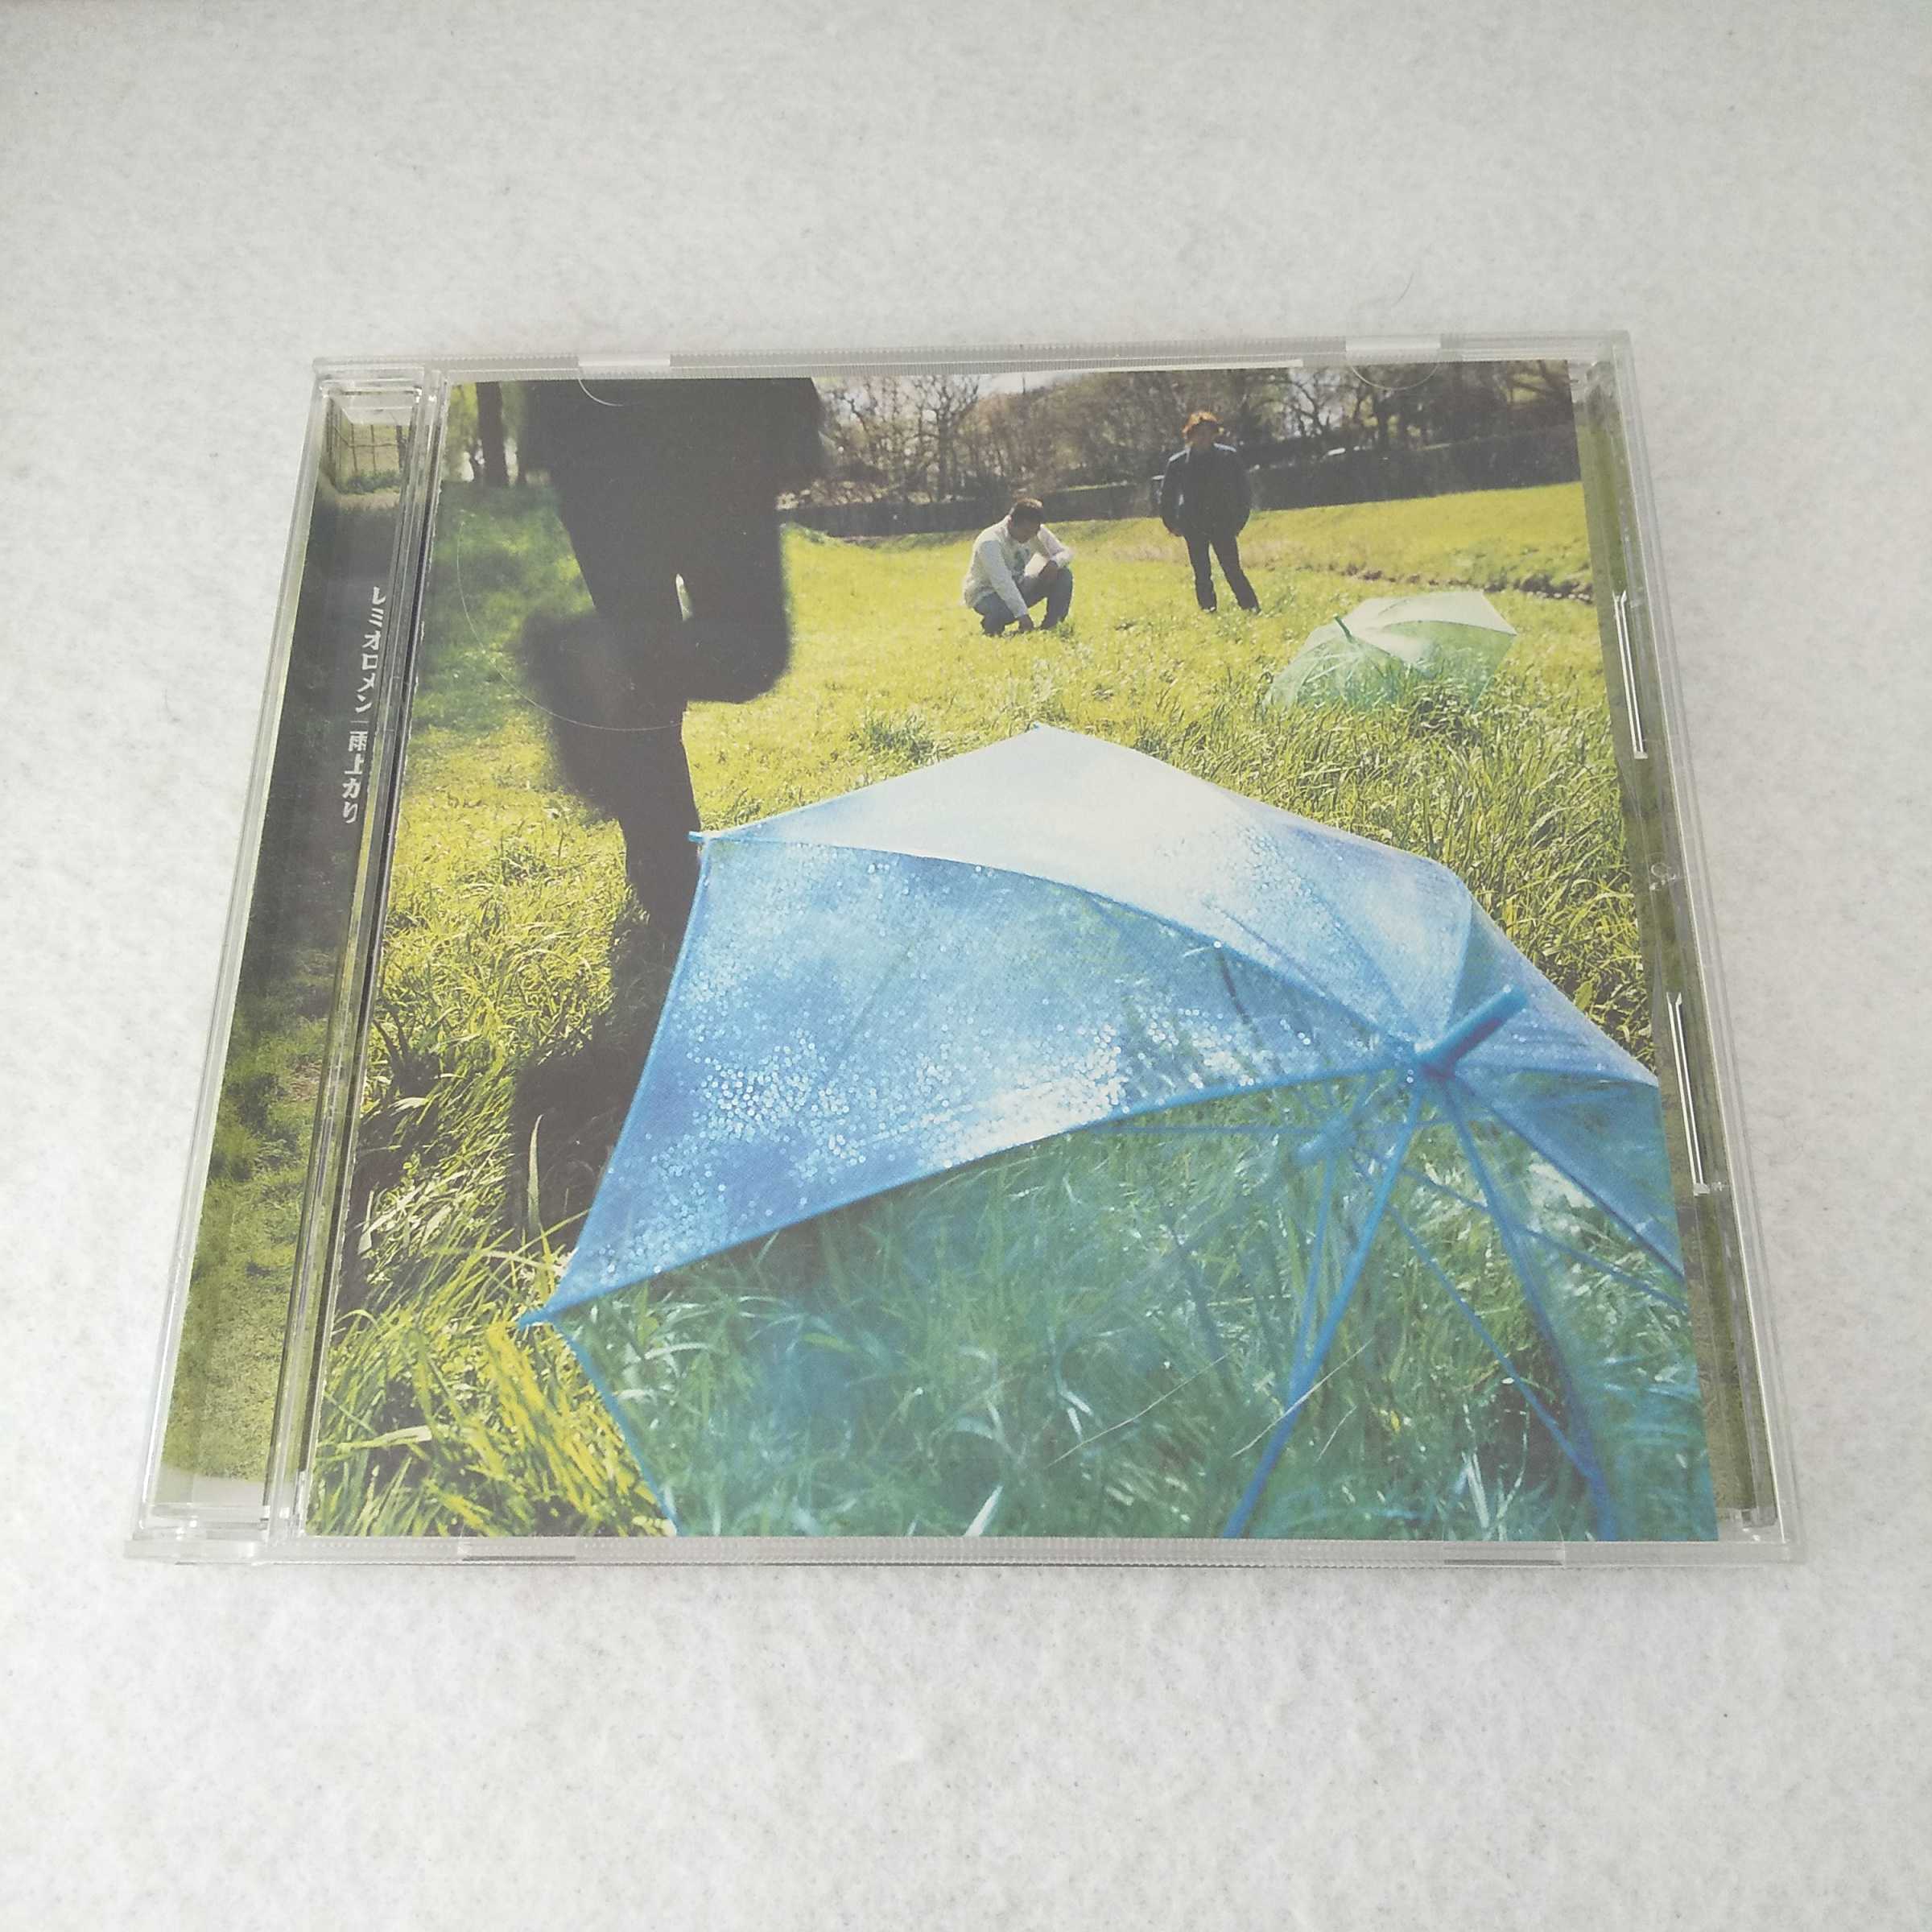 AC09287 【中古】 【CD】 雨上がり/レミオロメン